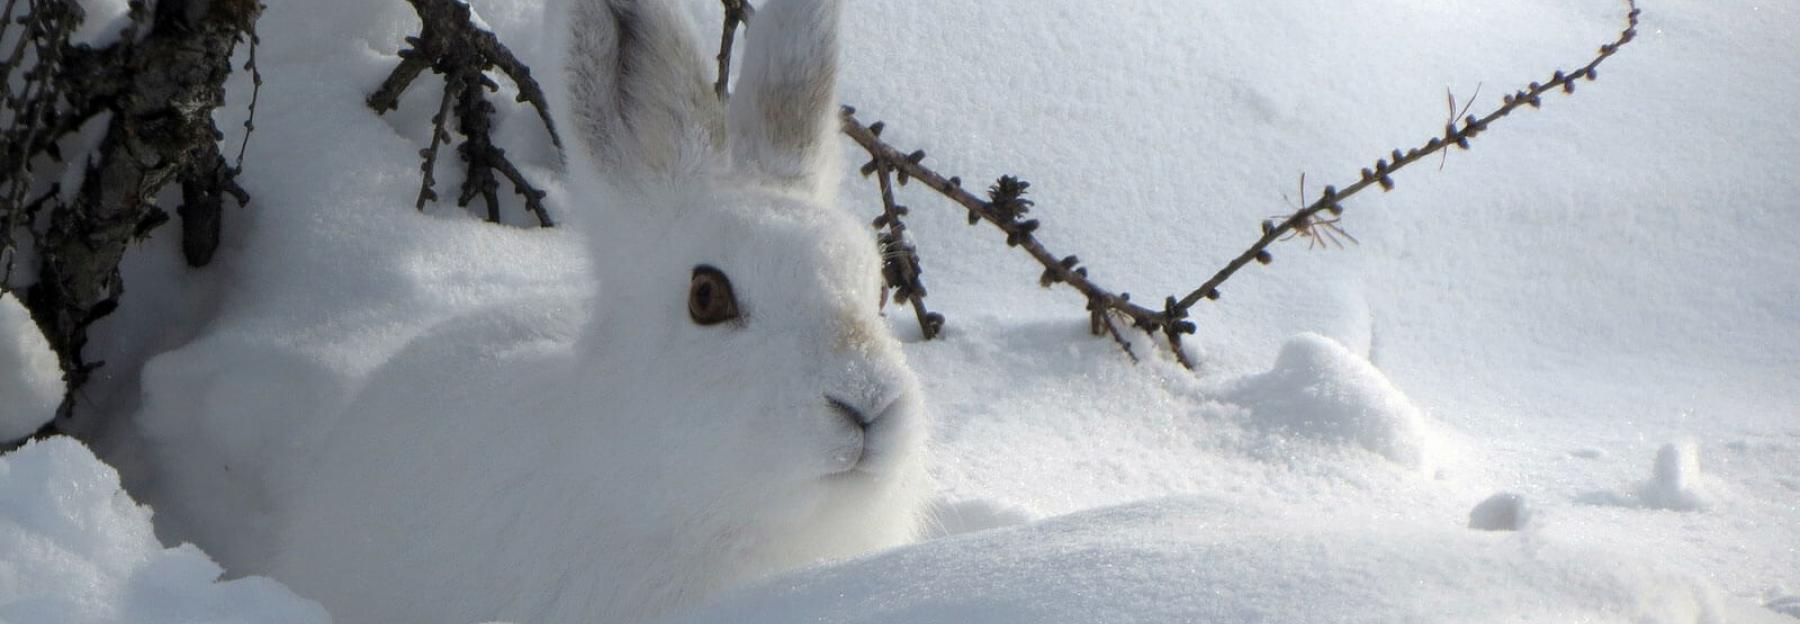 Tiere unter eis und schnee